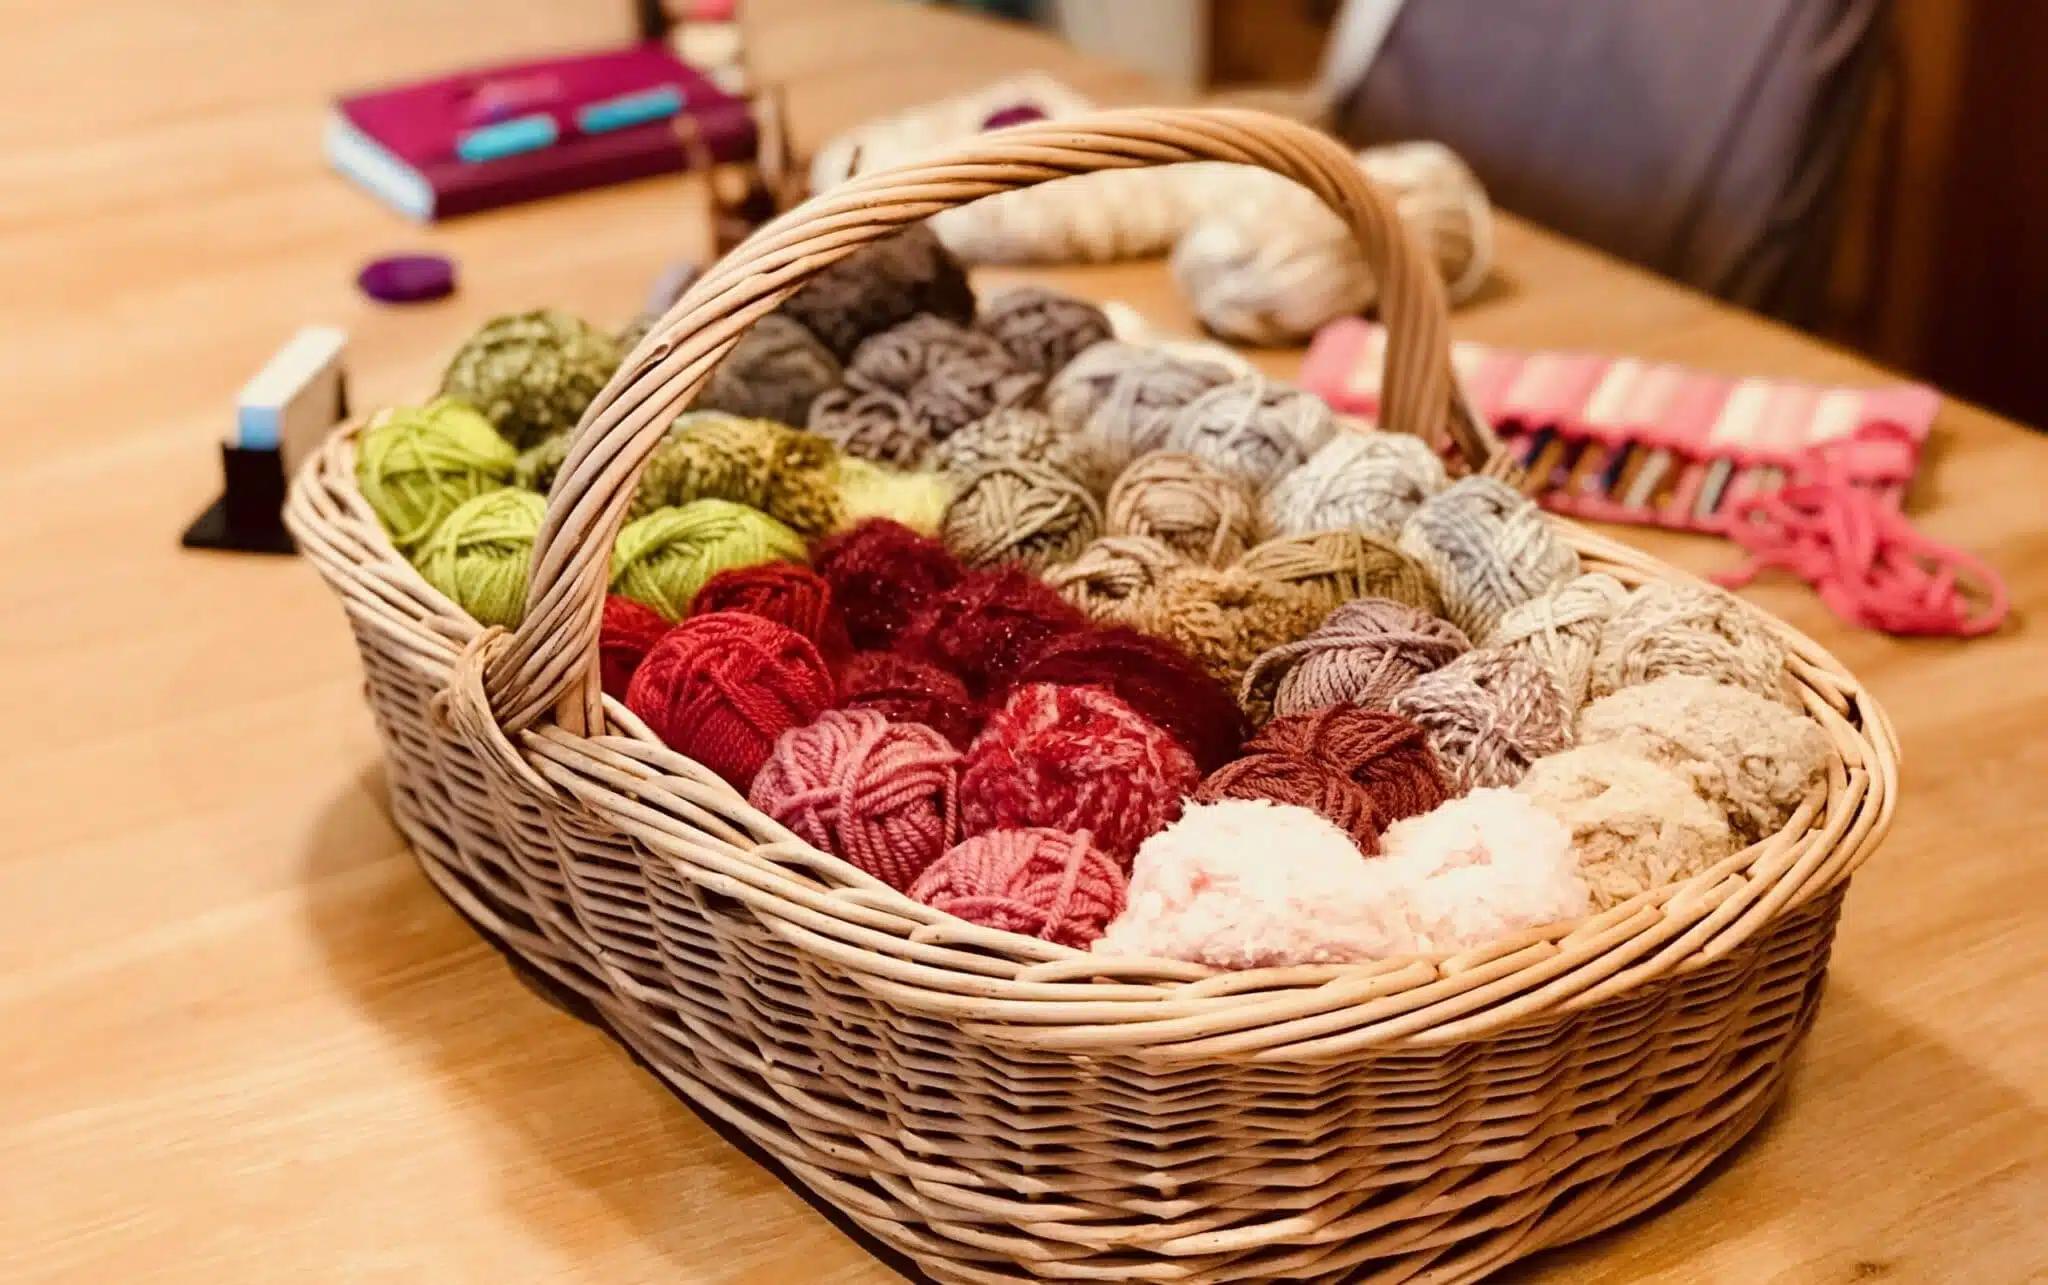 gabriela moreno crochet - Por qué es bueno hacer crochet